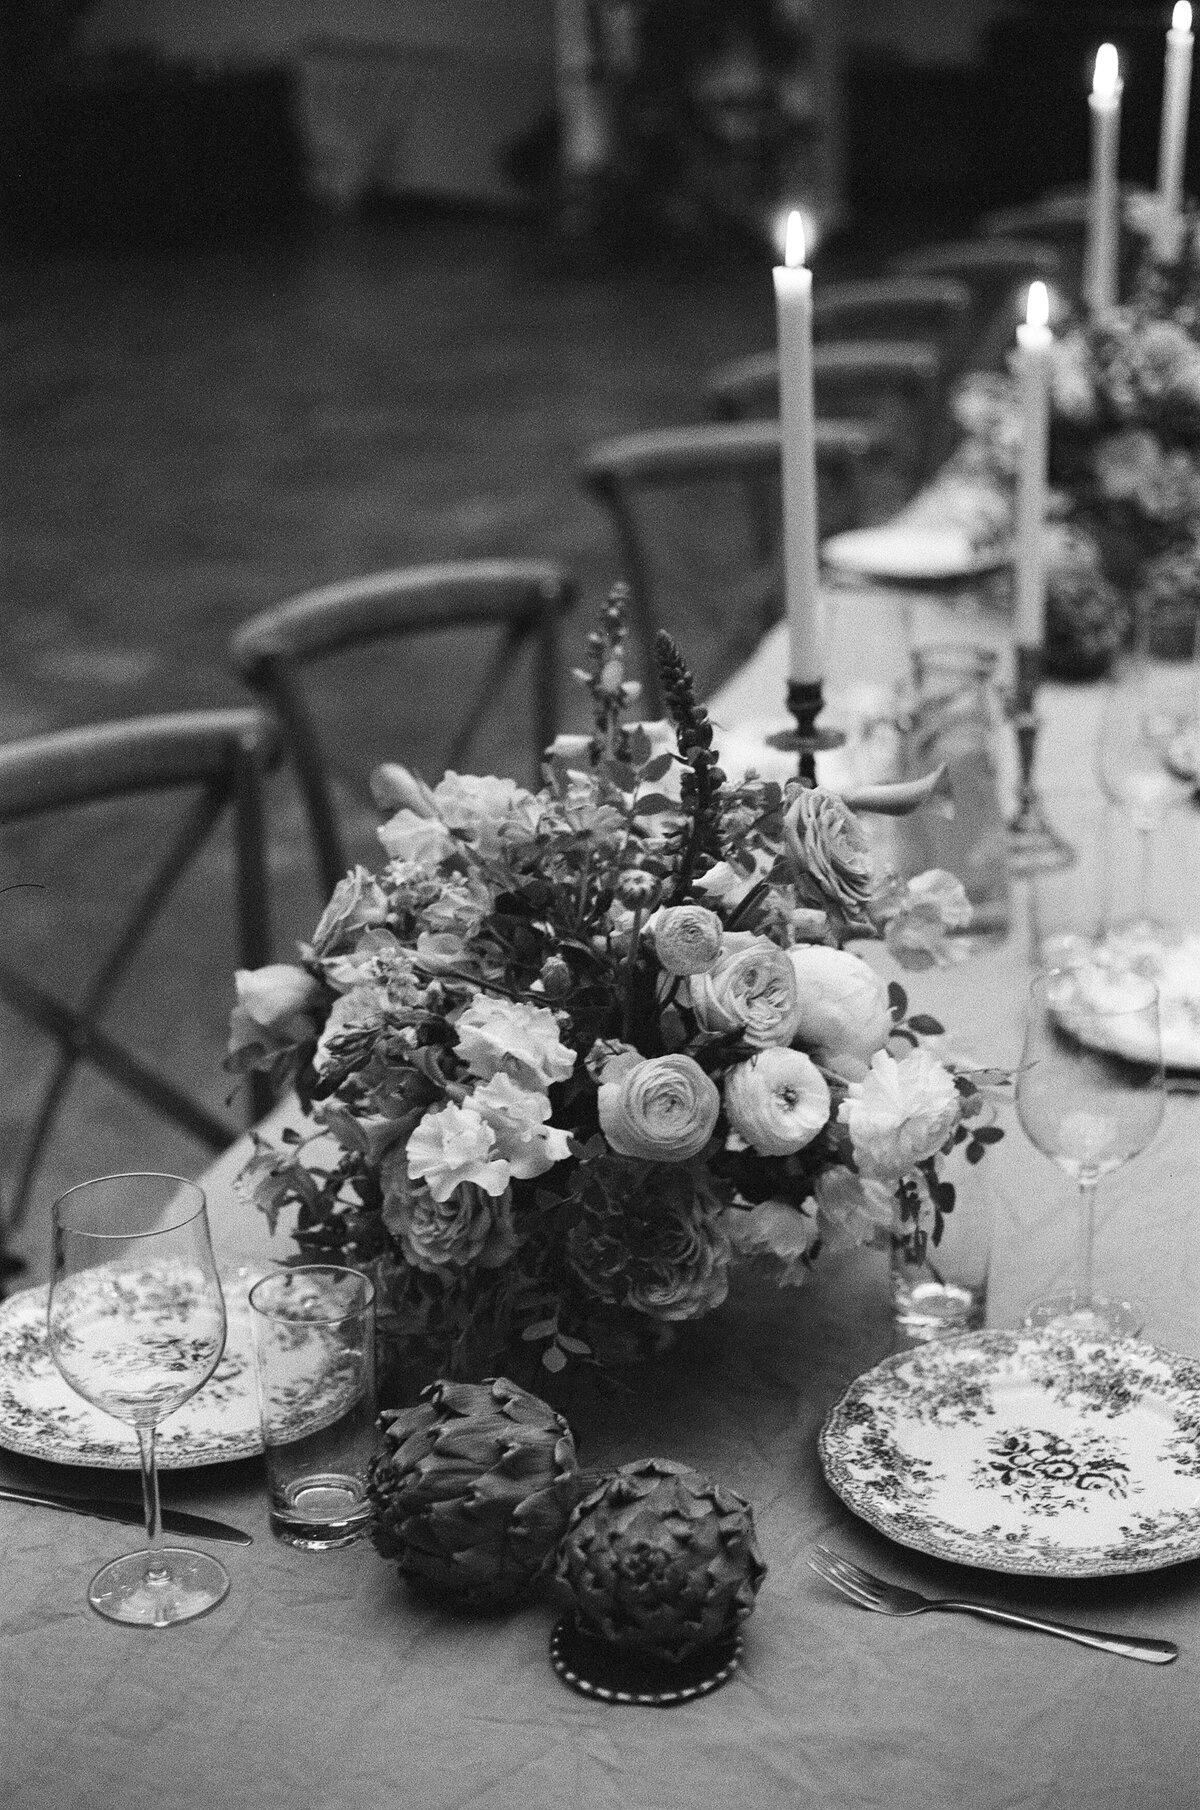 Table magnifique lors d'un mariage en destination européenne, ornée de décorations élégantes et de fleurs exotiques.